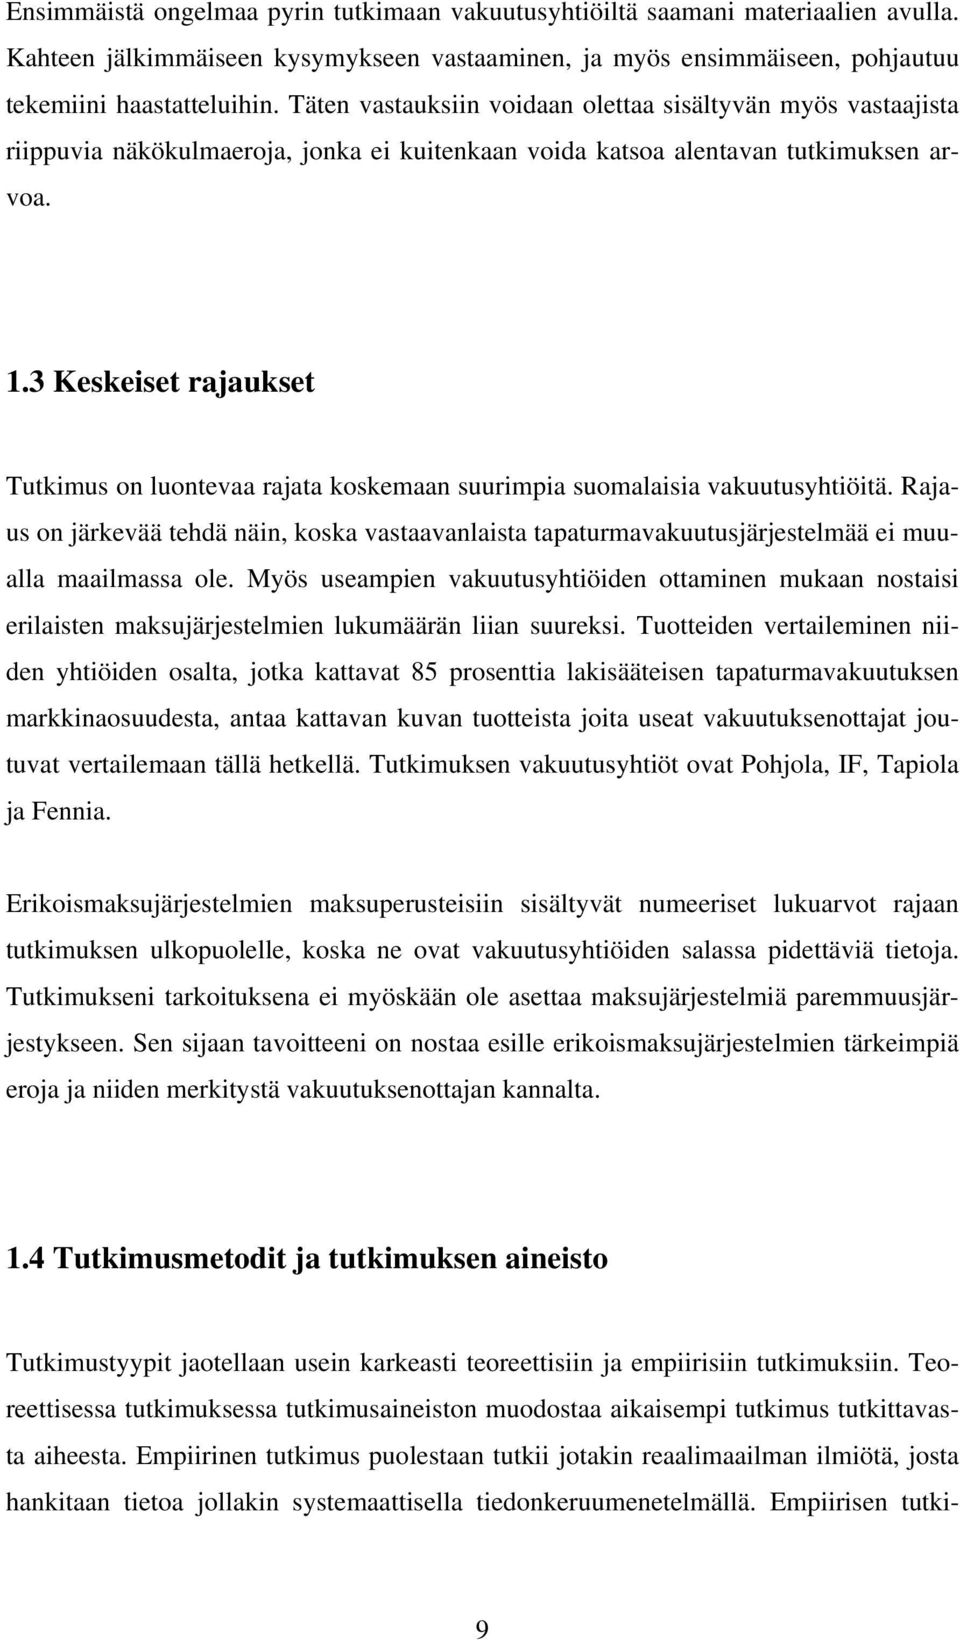 3 Keskeiset rajaukset Tutkimus on luontevaa rajata koskemaan suurimpia suomalaisia vakuutusyhtiöitä.